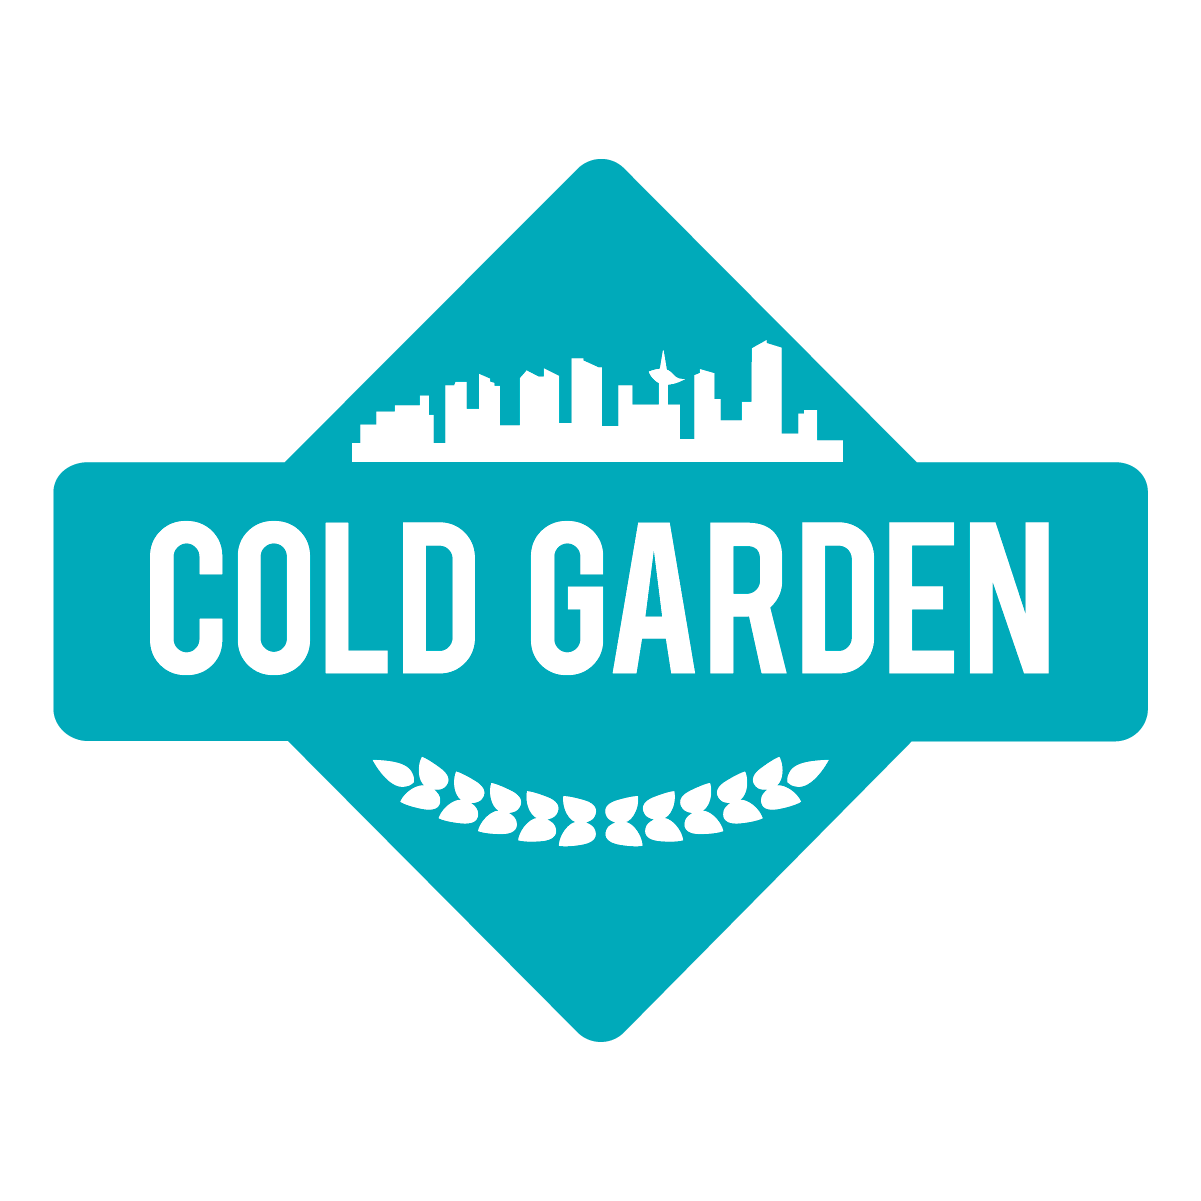 Cold Garden